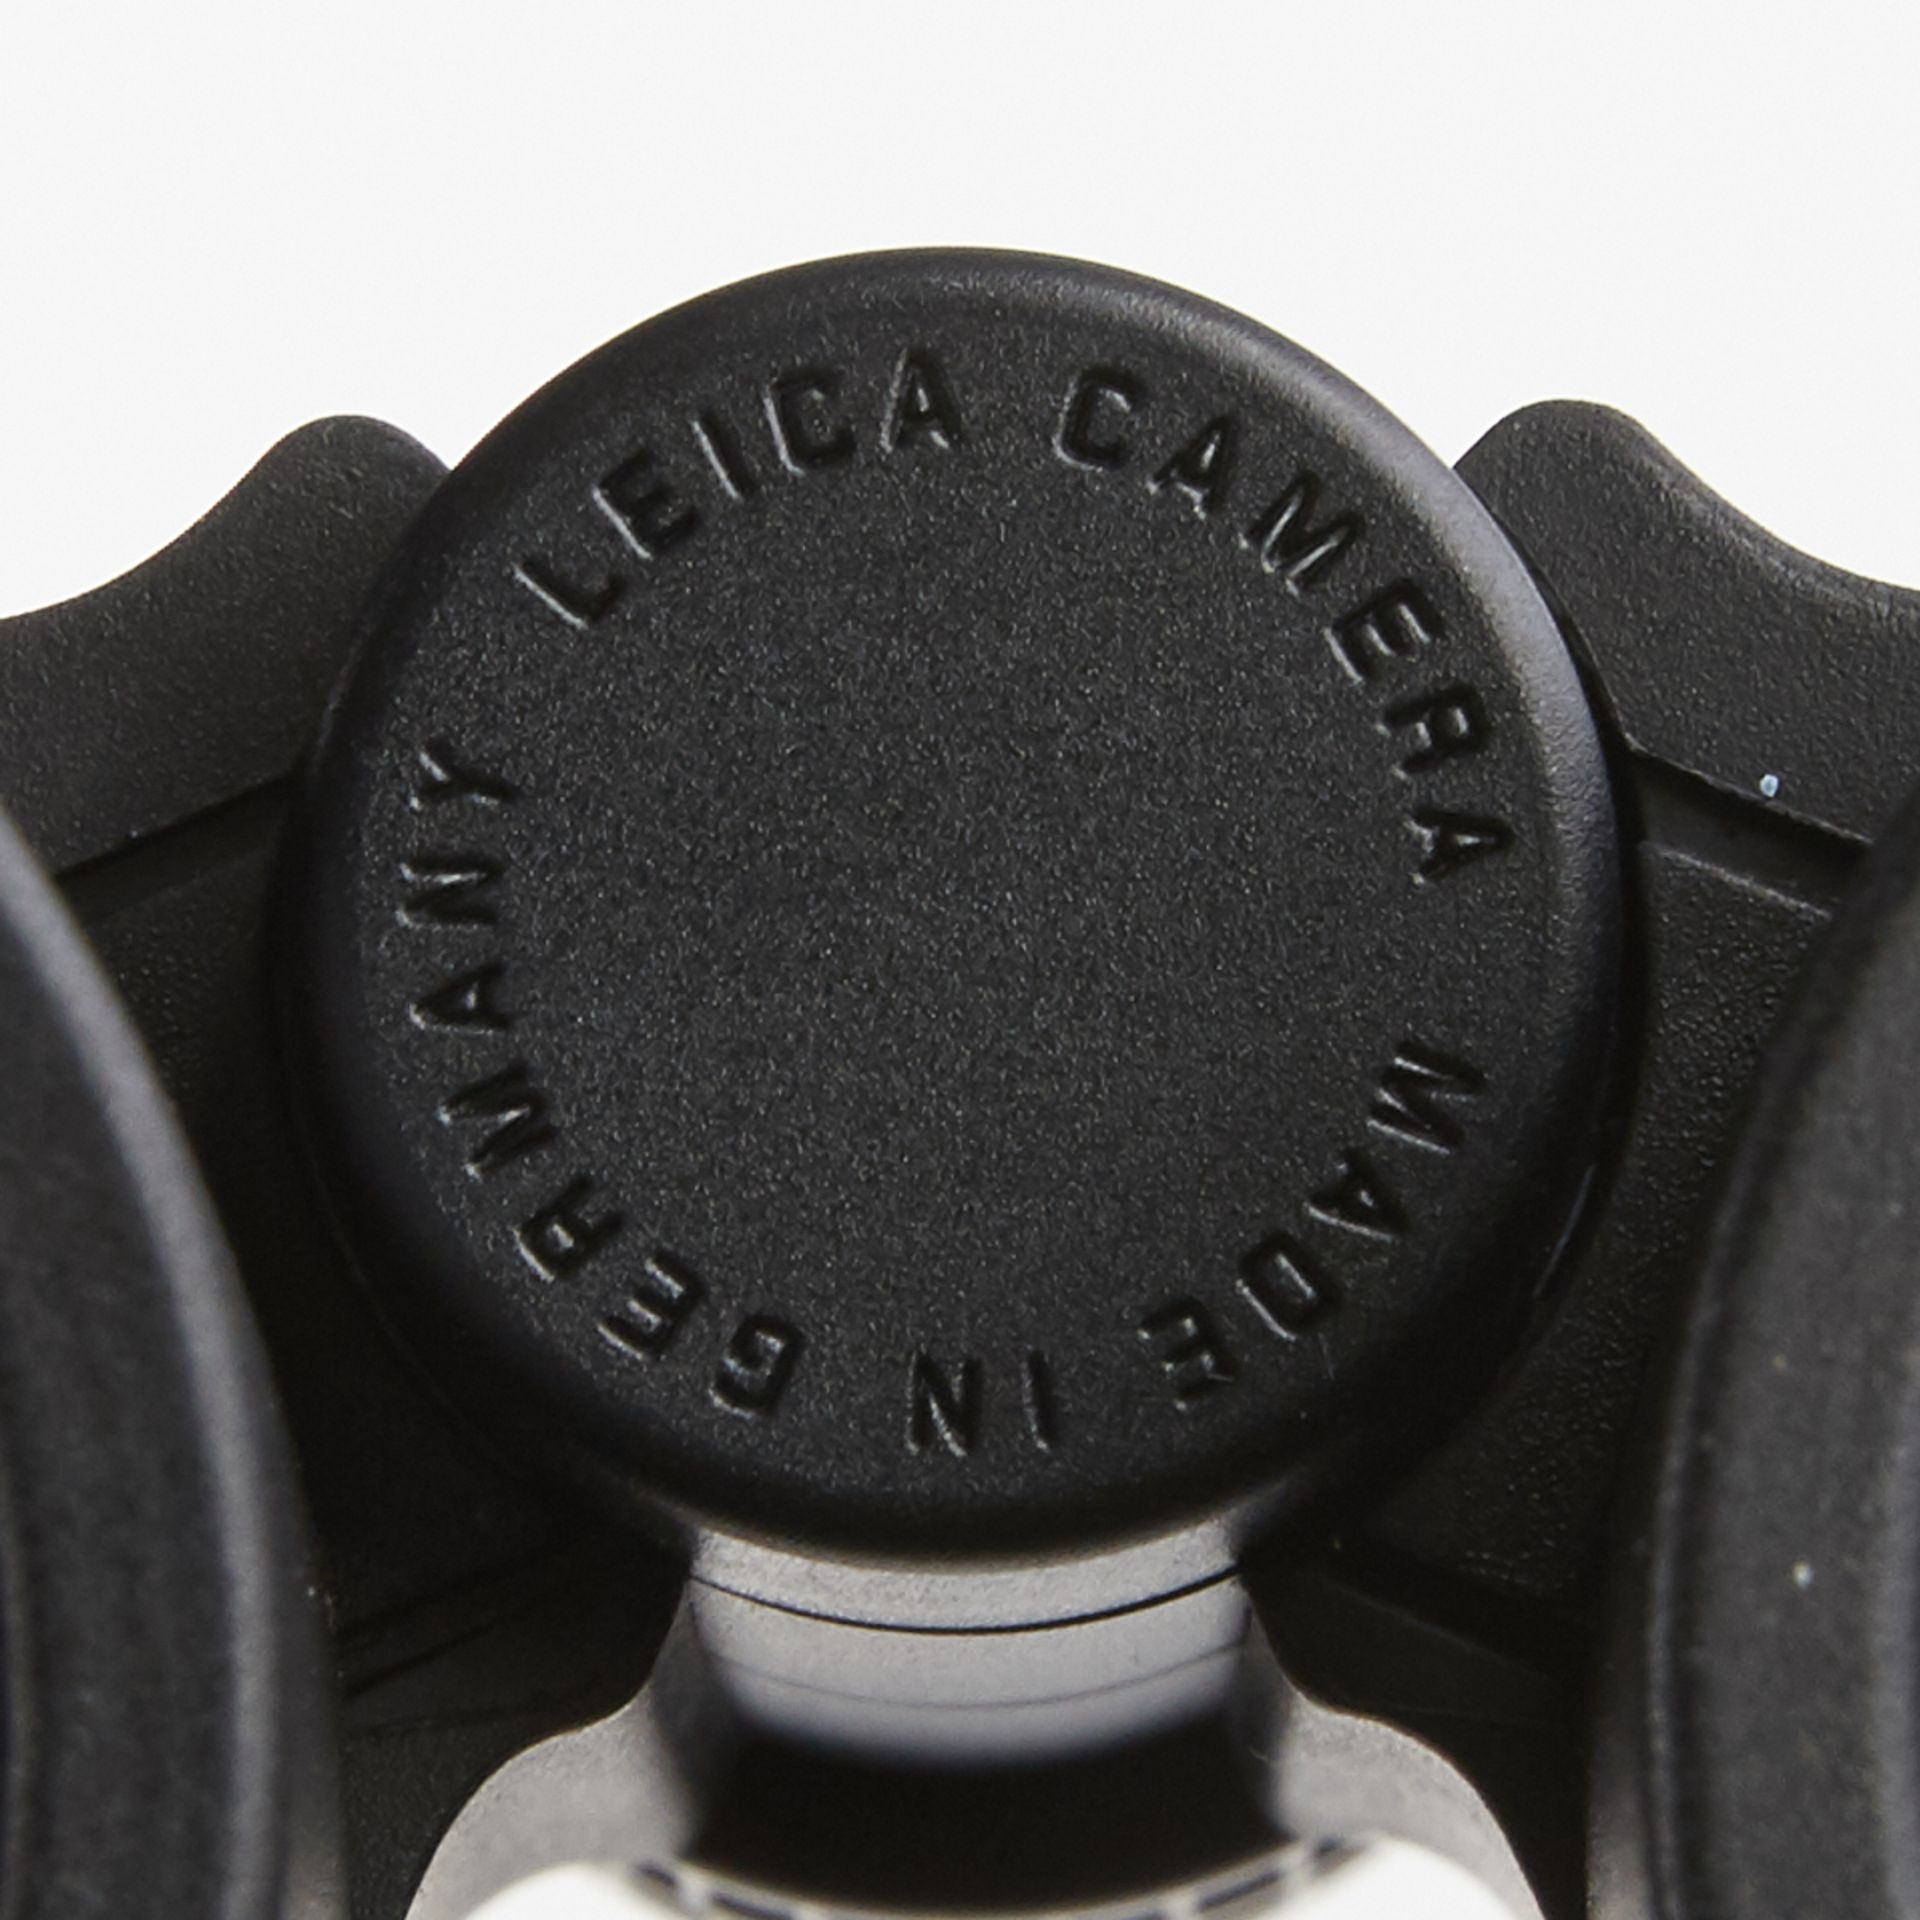 Leica Ultravid 8x42 HD Binoculars - New In Box - Image 8 of 10